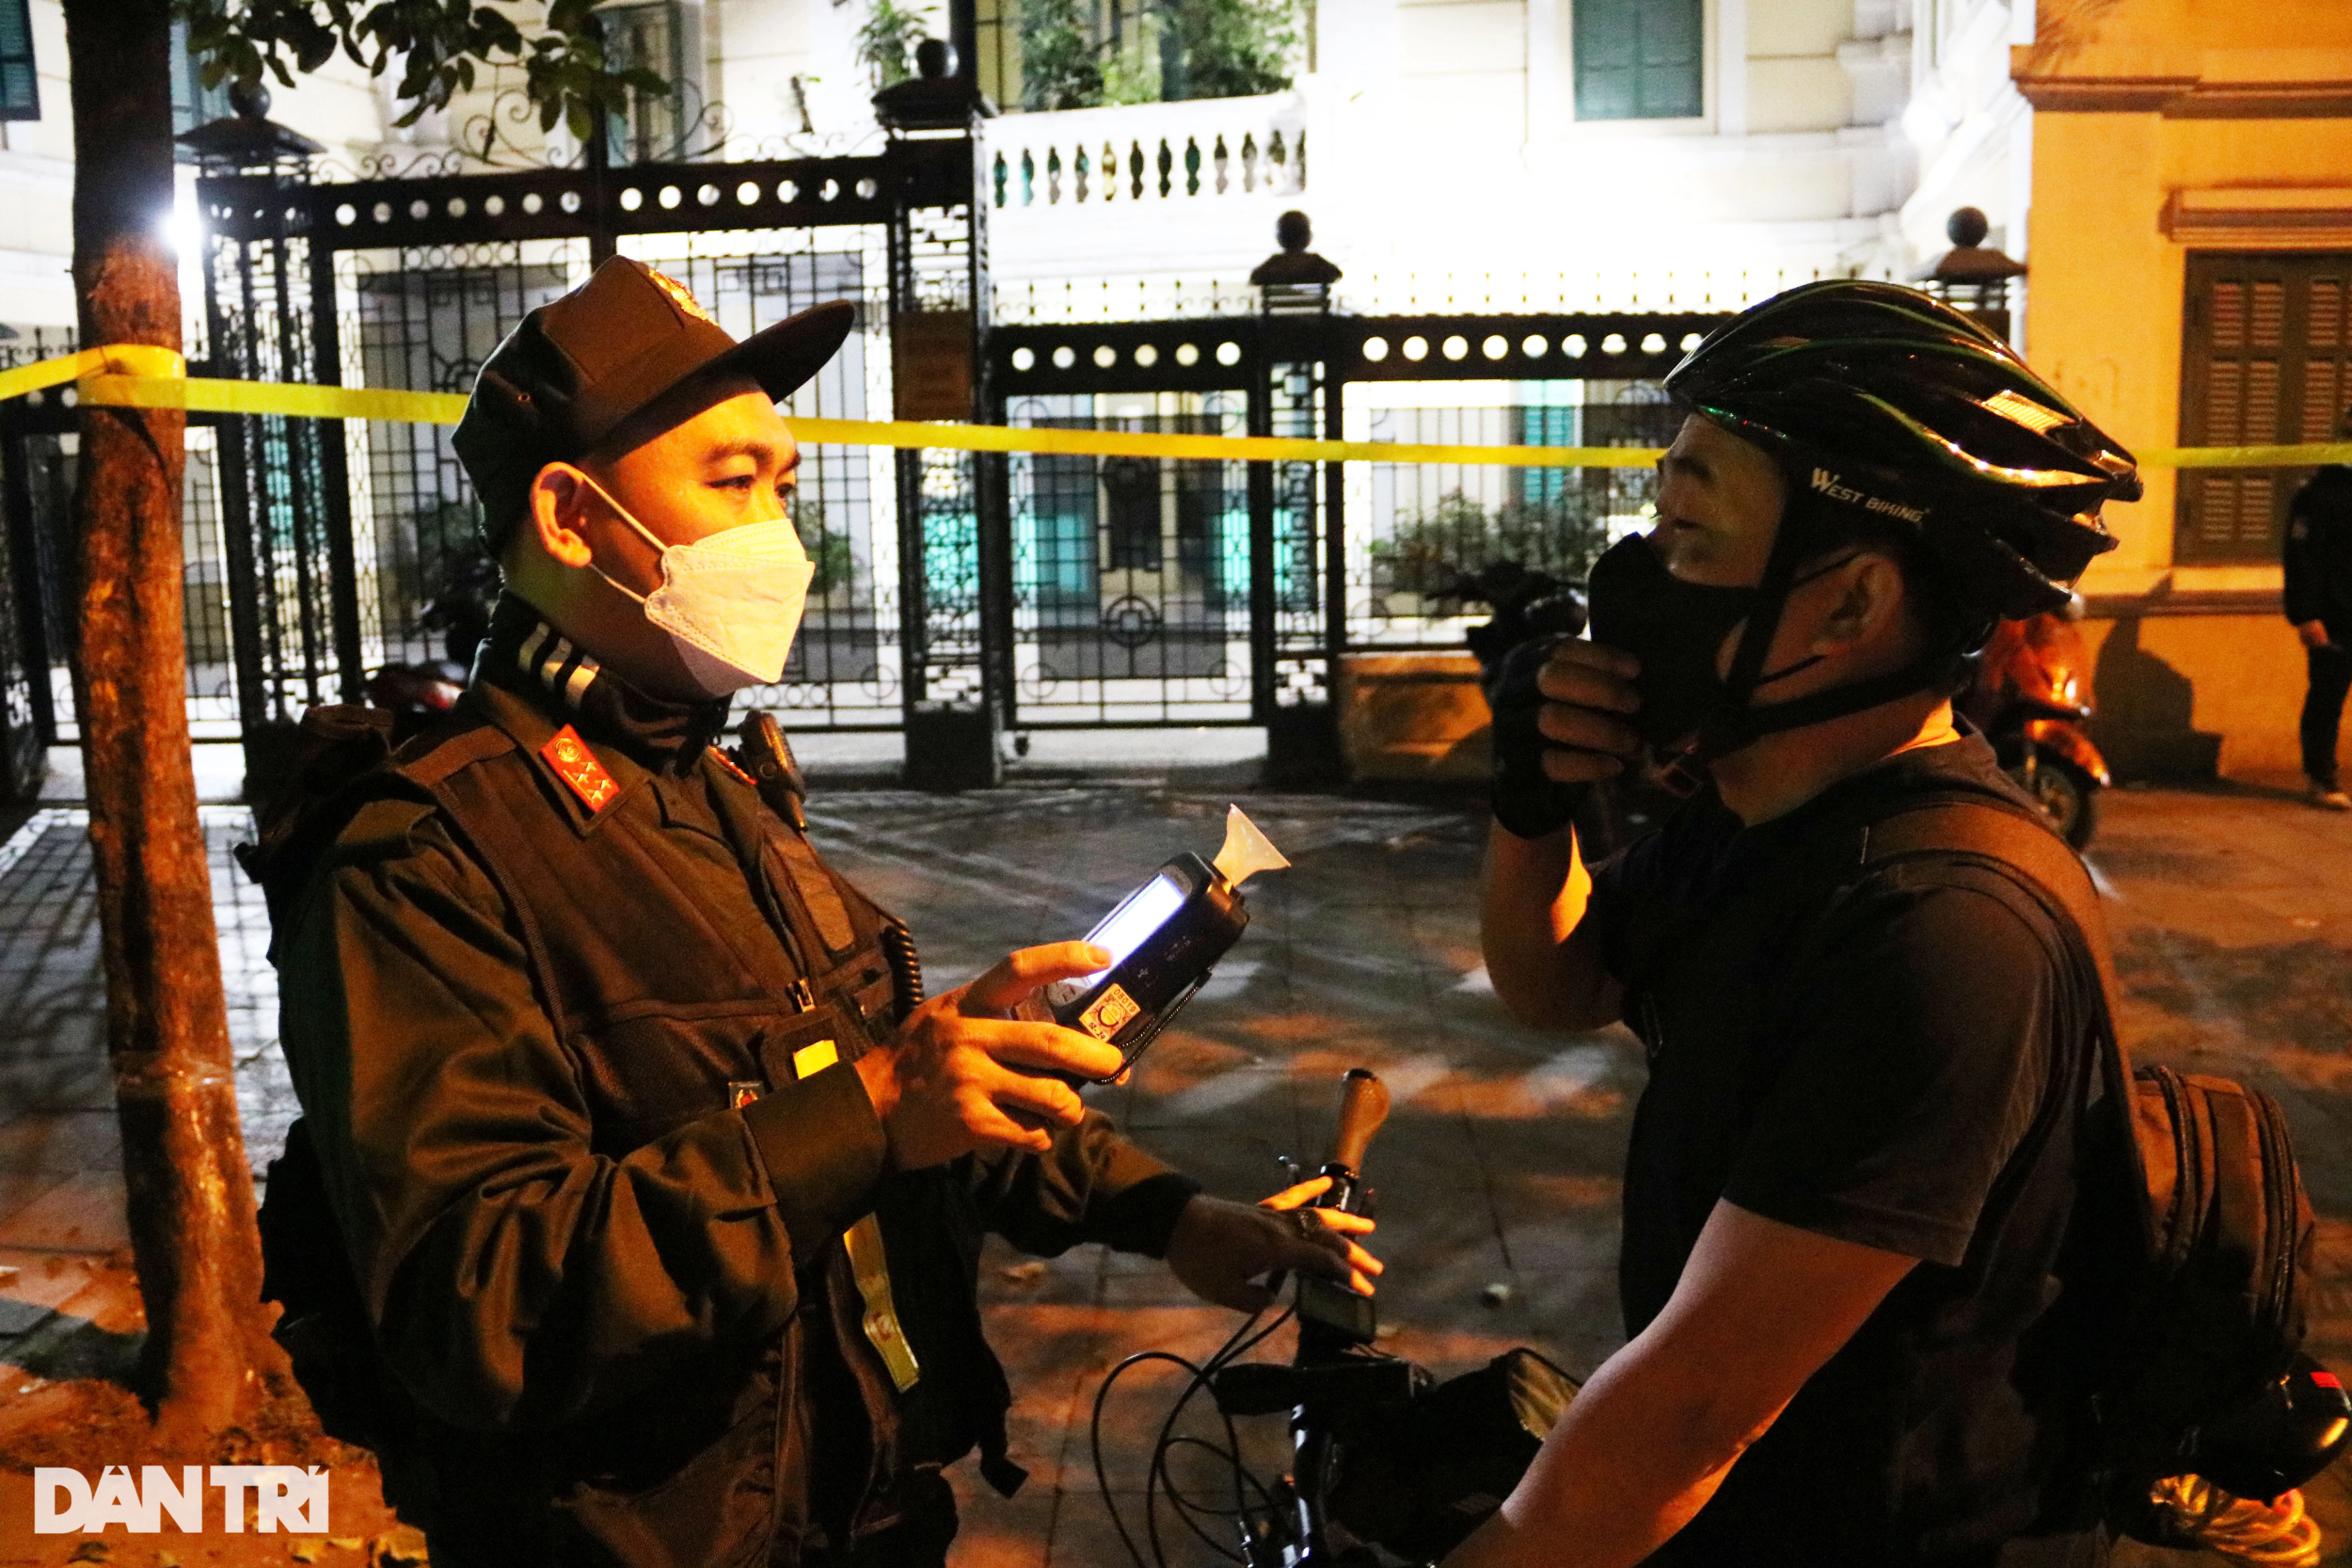 Cảnh sát 141 kiểm tra nồng độ cồn hàng loạt người đi xe đạp trên phố Hà Nội - 12